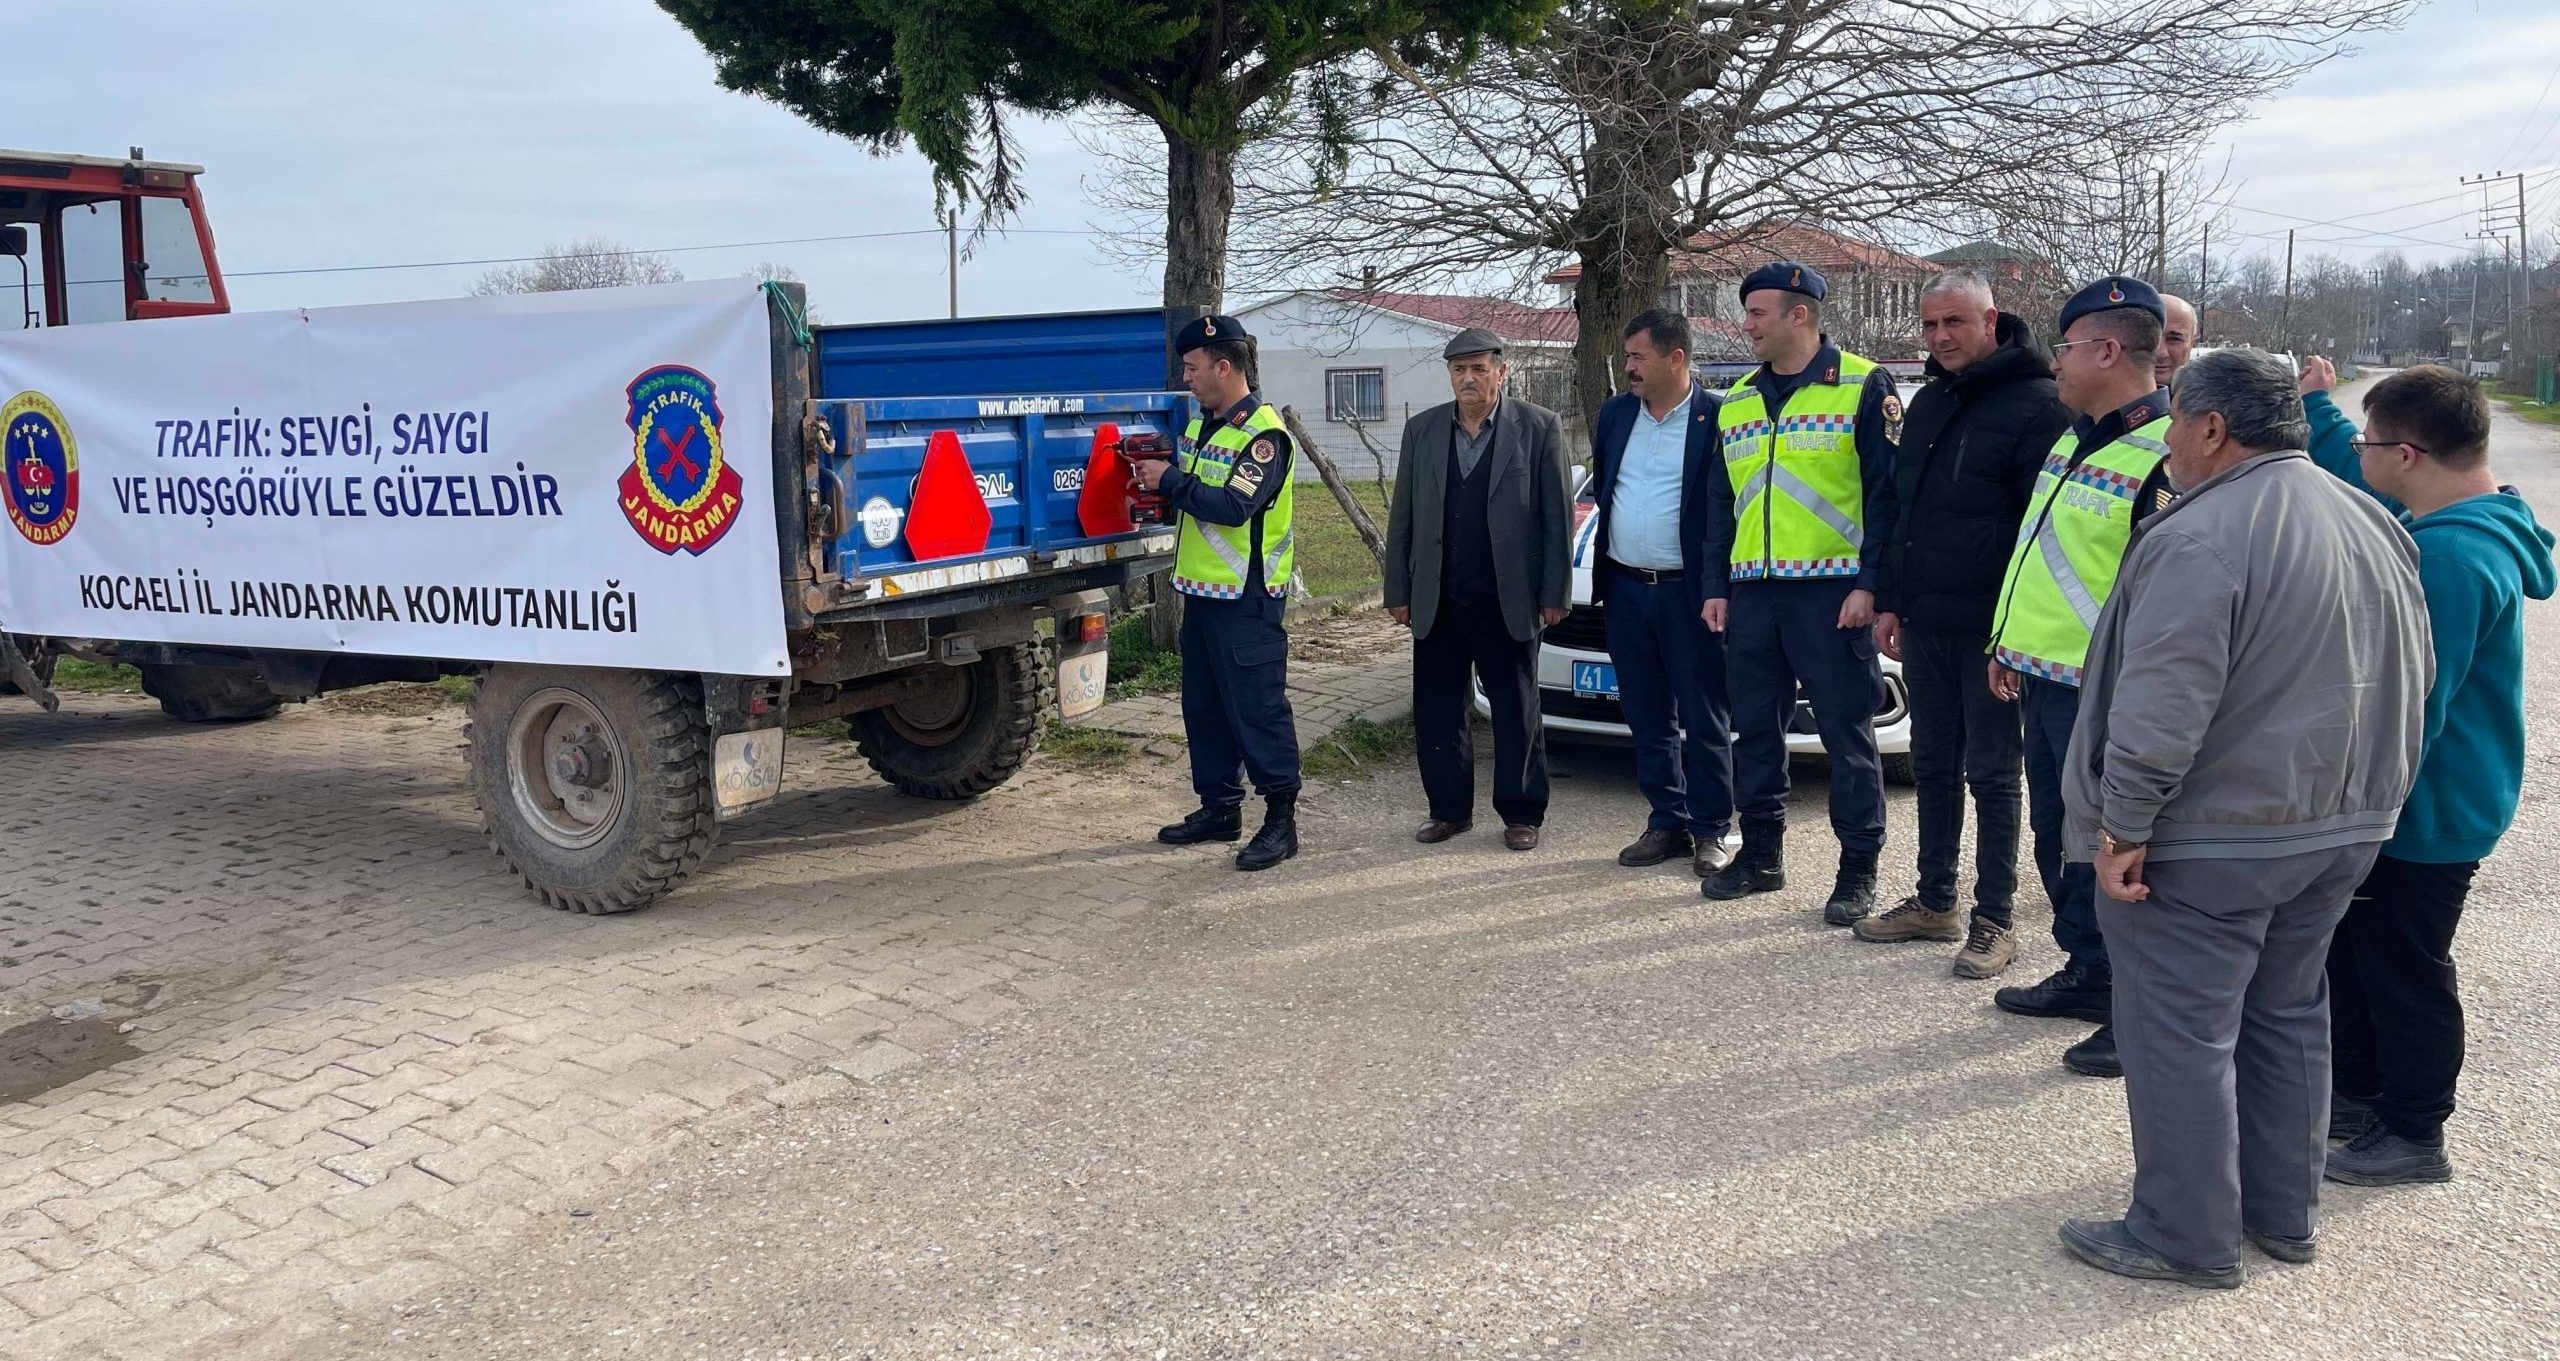 Kocaeli İl Jandarma Komutanlığı, Trafik Jandarmaları Tarafından Traktör Kazalarını Önleme Projesi Kapsamında Eğitim Verildi